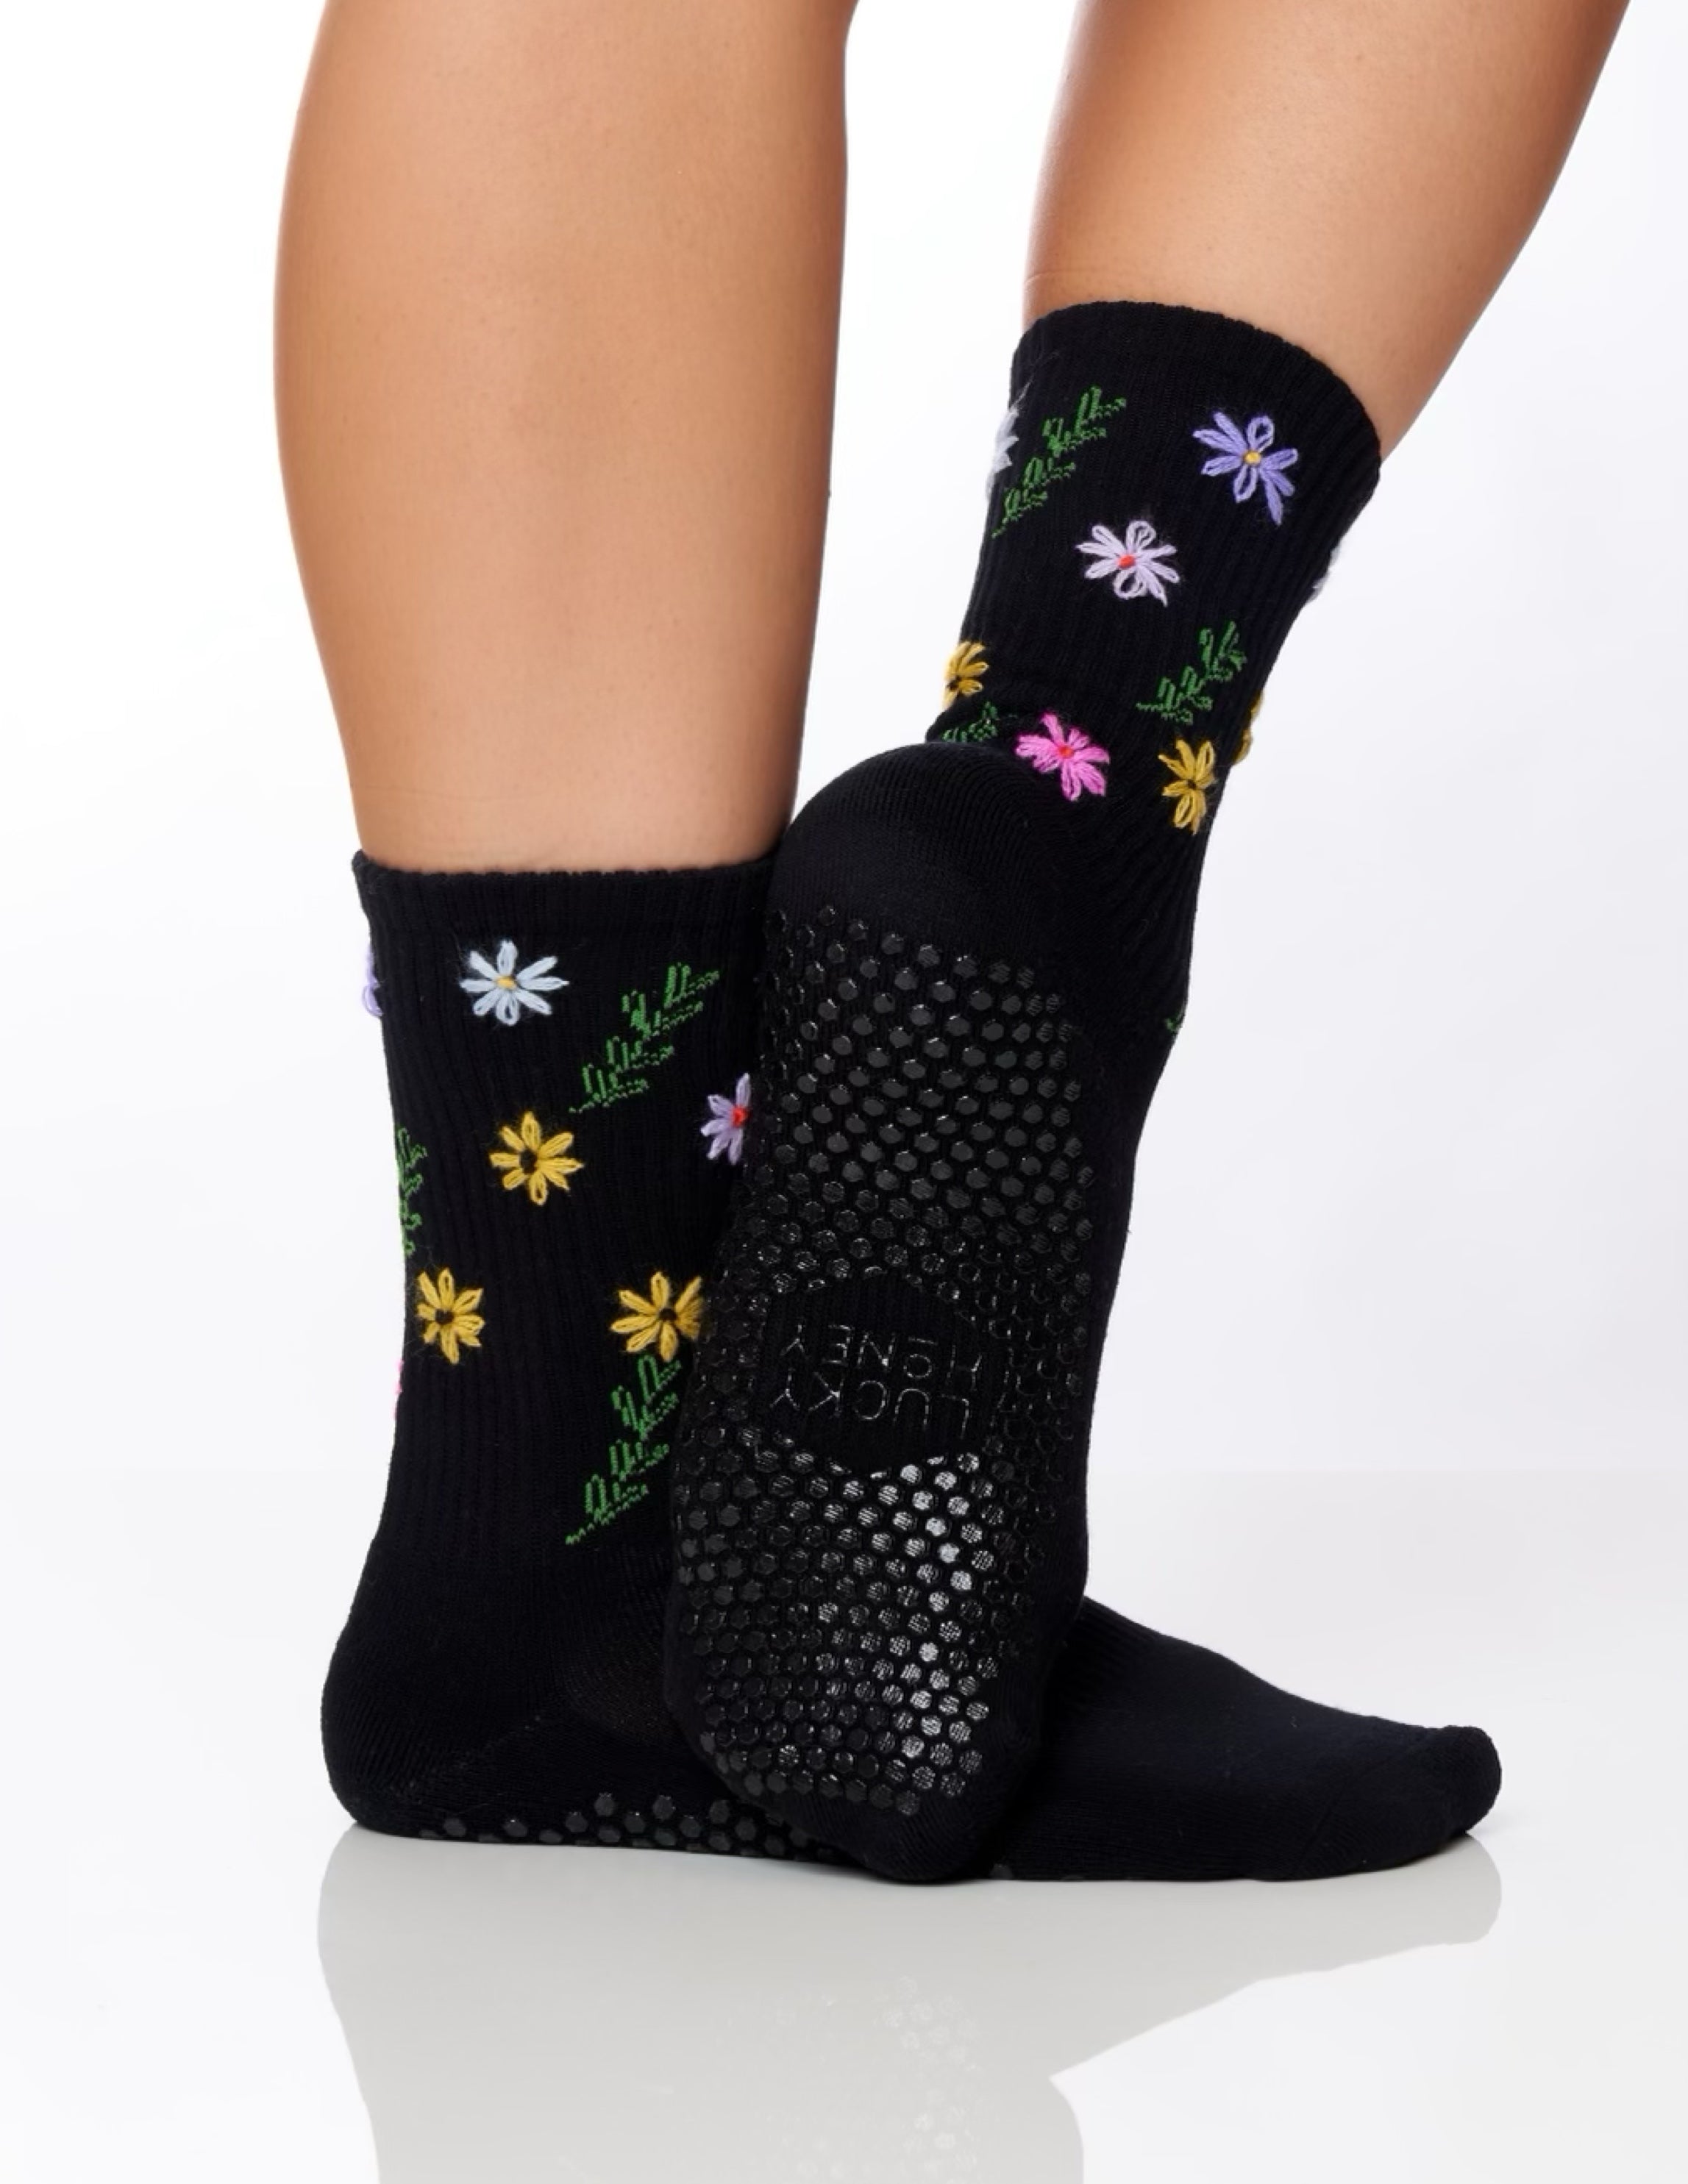 Slide On Non Slip Grip Socks, Daisy Floral